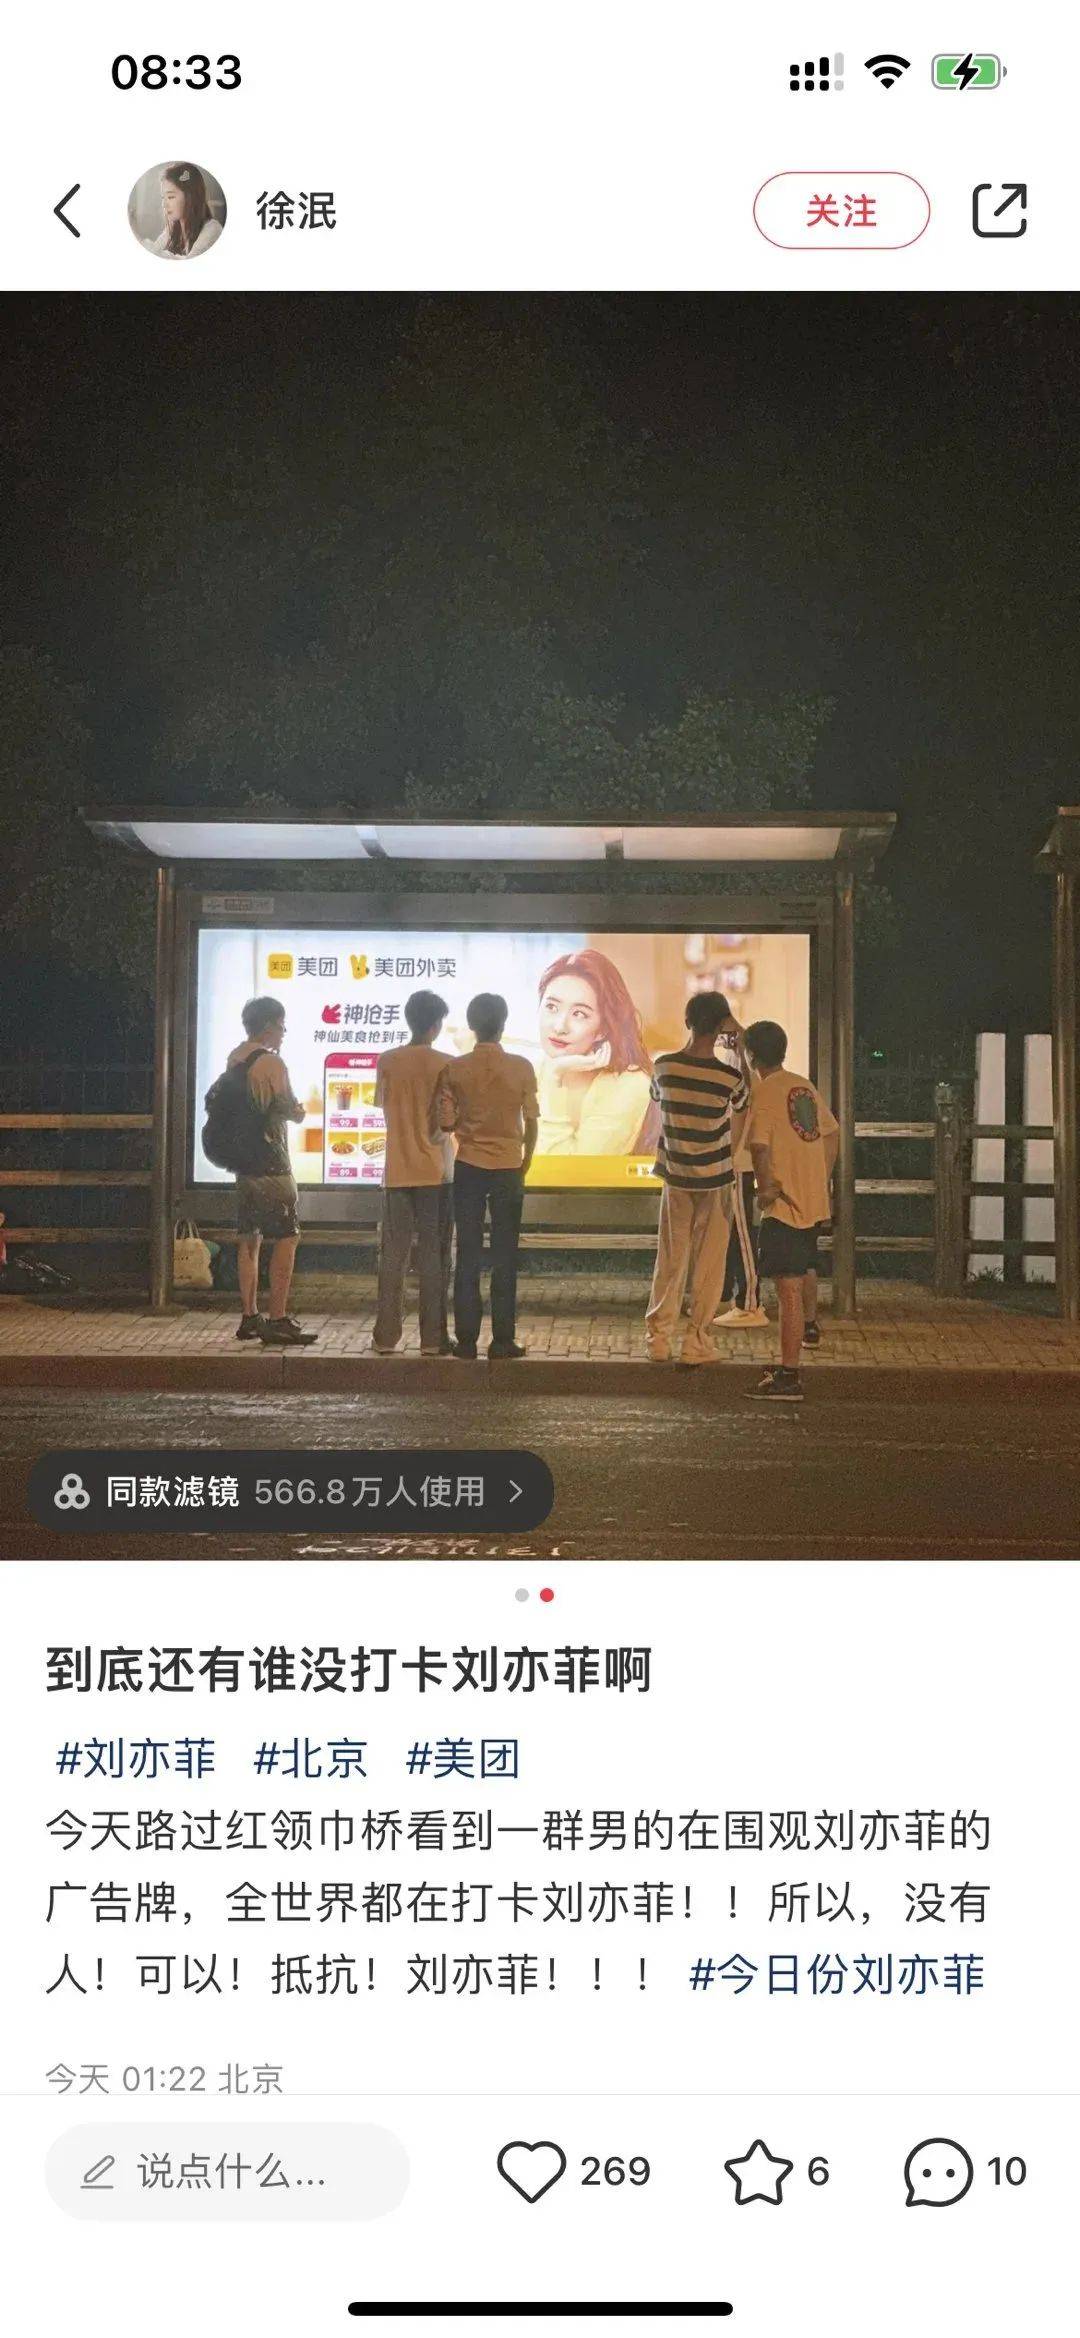 看完美团外卖和刘亦菲的新广告，想点外卖了